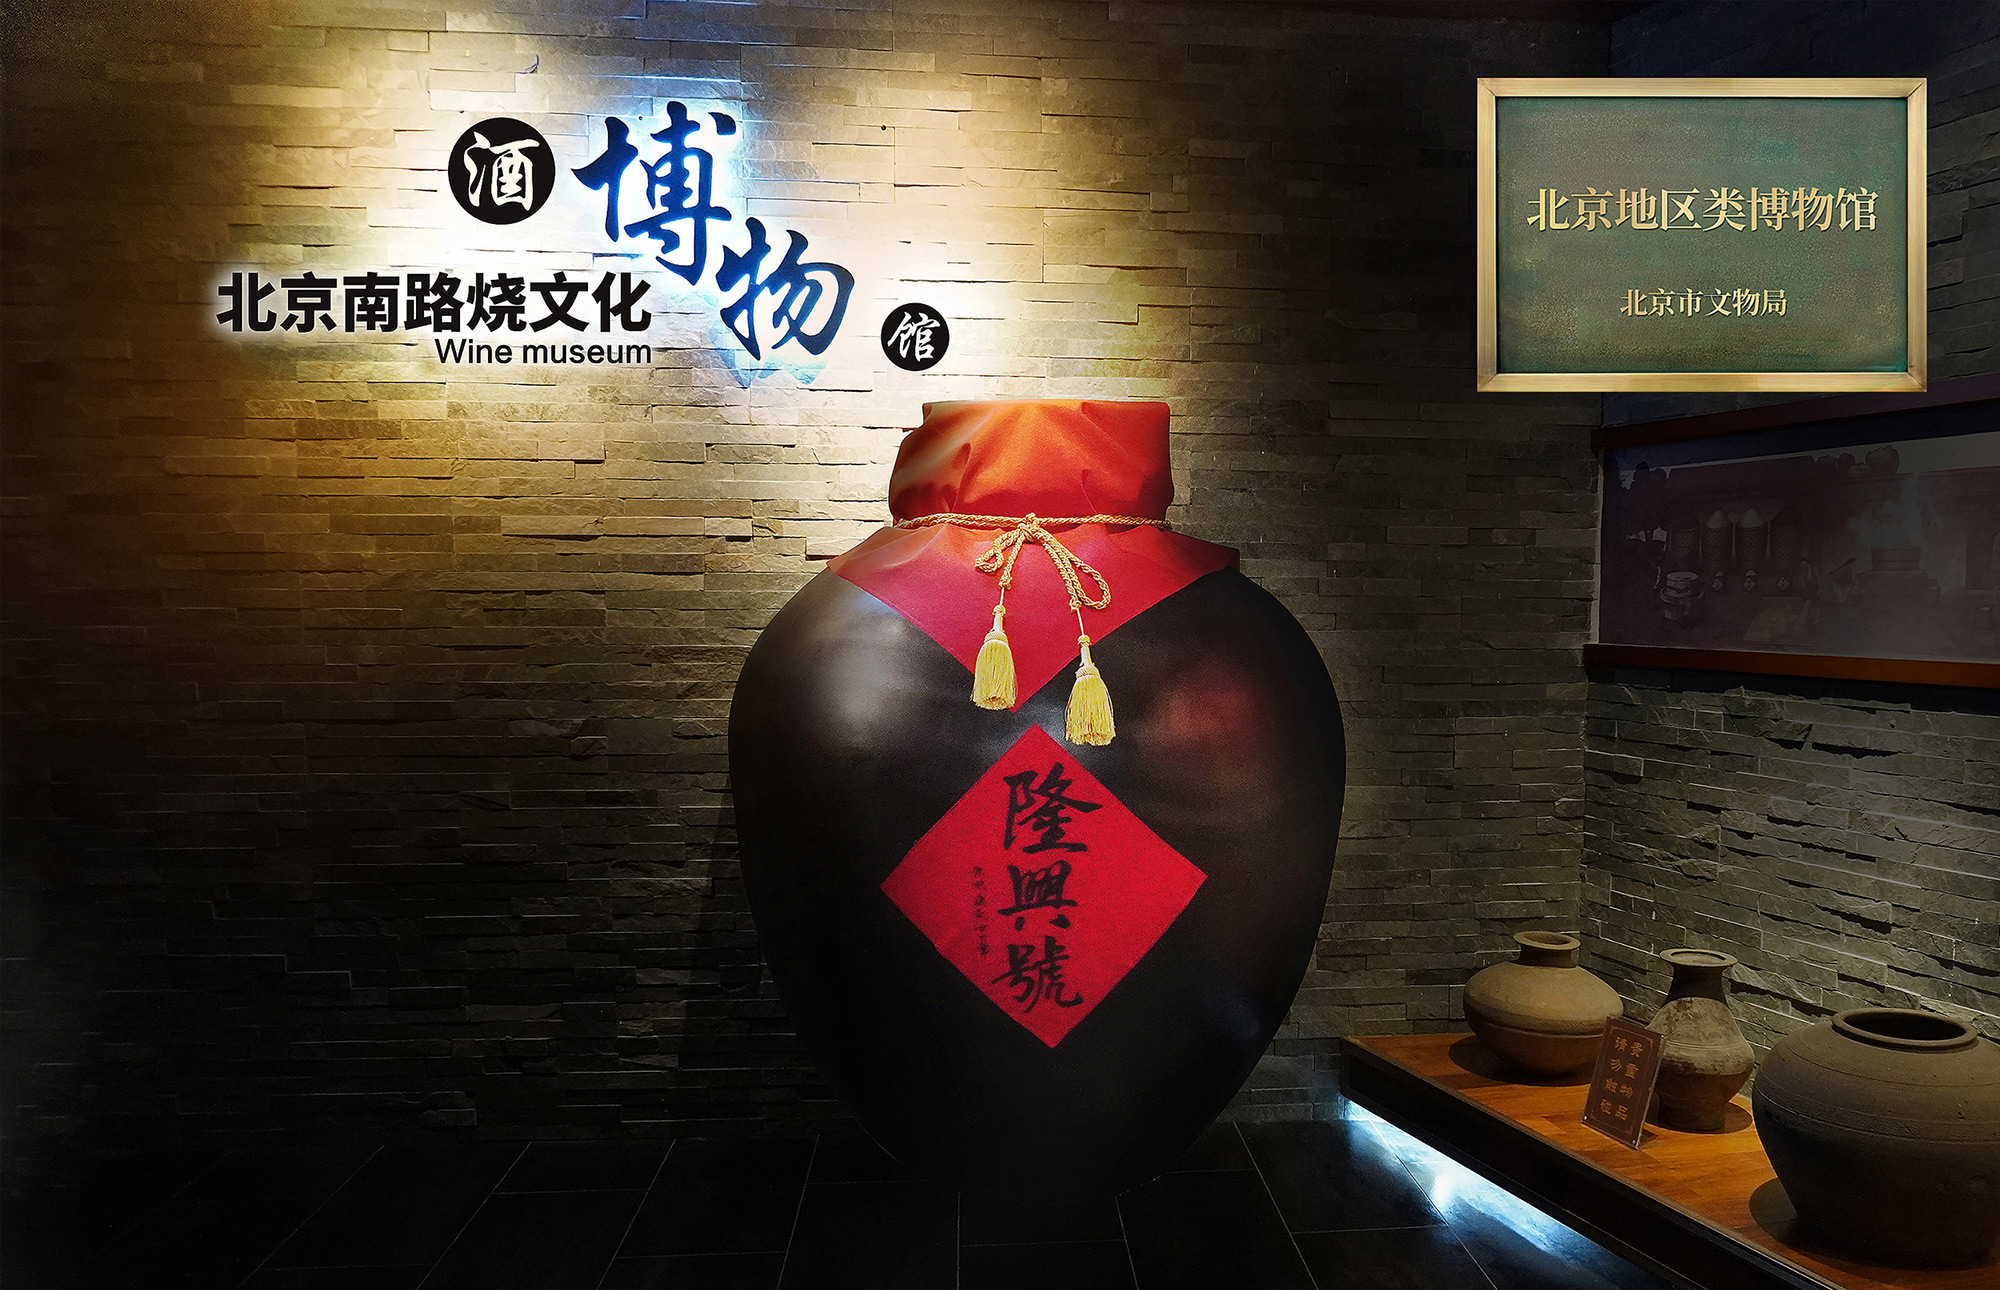 北京南路烧文化酒博物馆-带牌.jpg